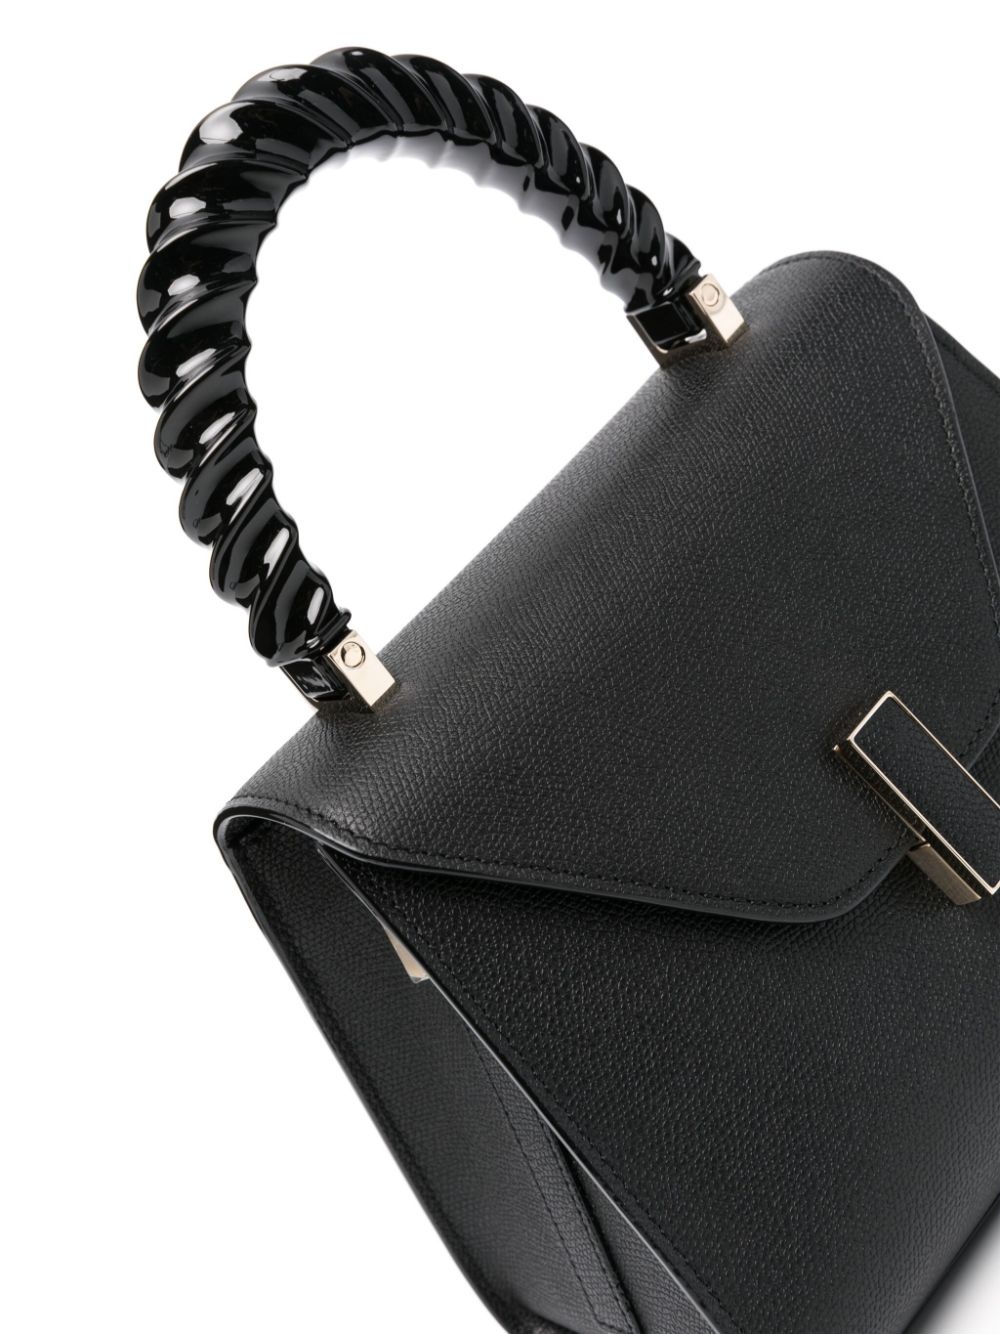 Iside leather mini handbag - 5